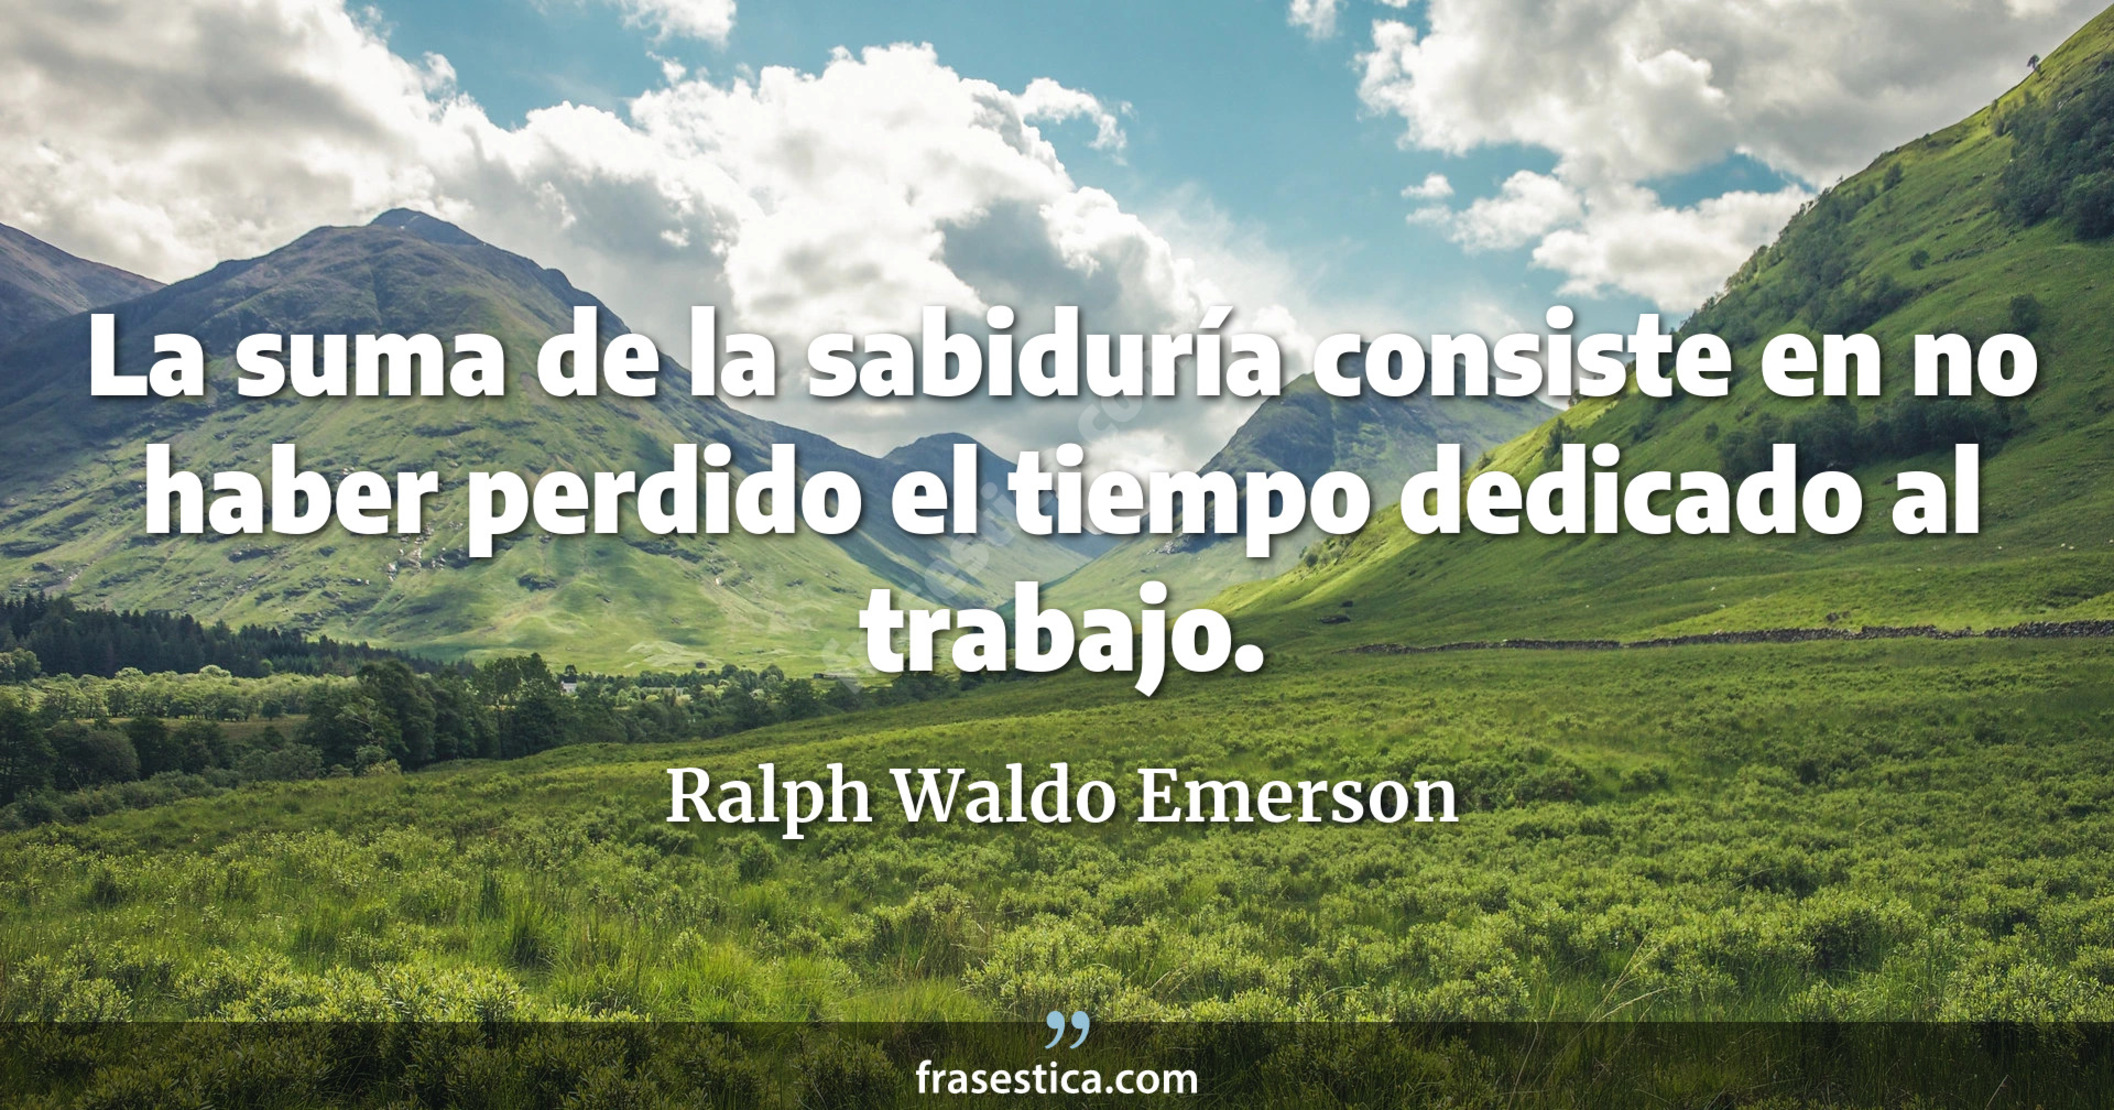 La suma de la sabiduría consiste en no haber perdido el tiempo dedicado al trabajo. - Ralph Waldo Emerson